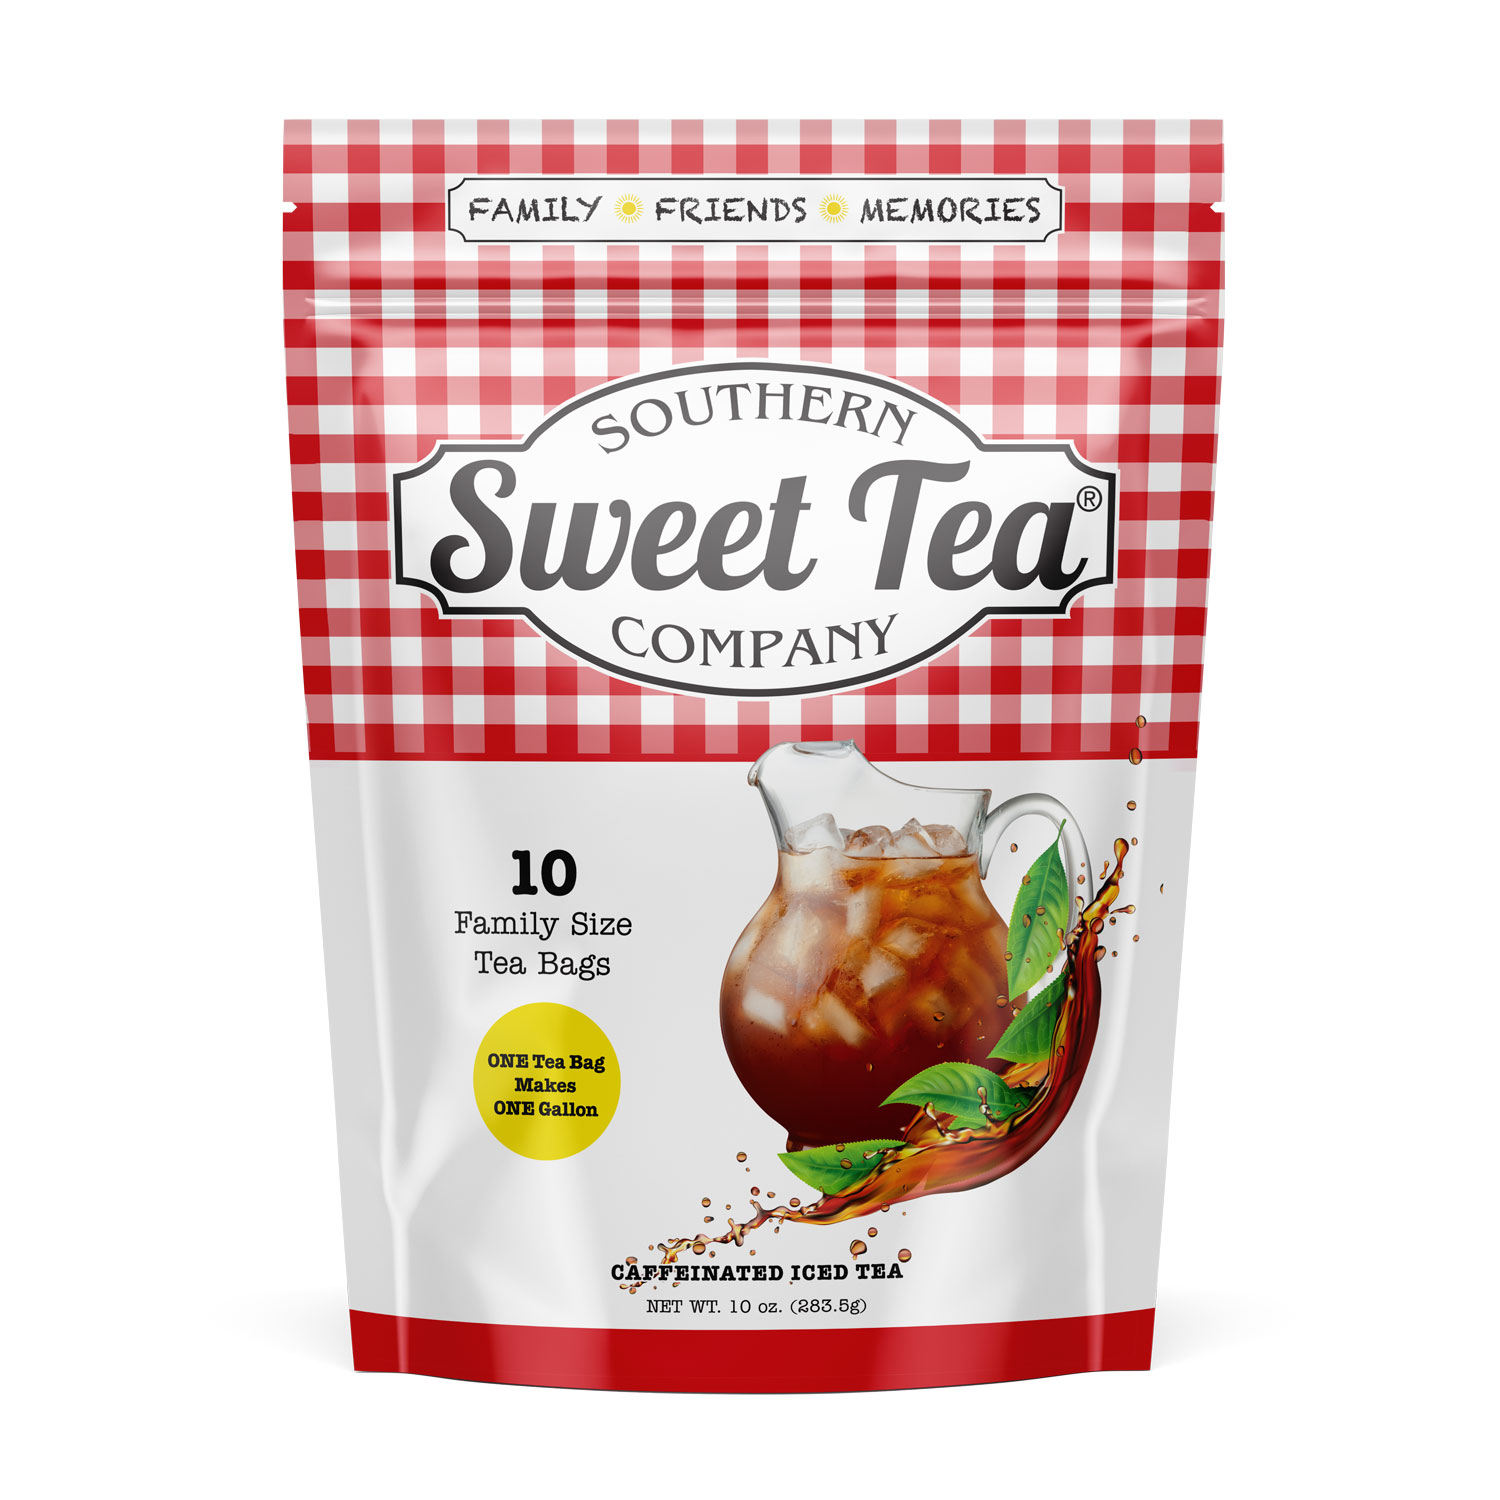 Southern Sweet Tea Company Iced Tea Bags - Southern Sweet Tea Company